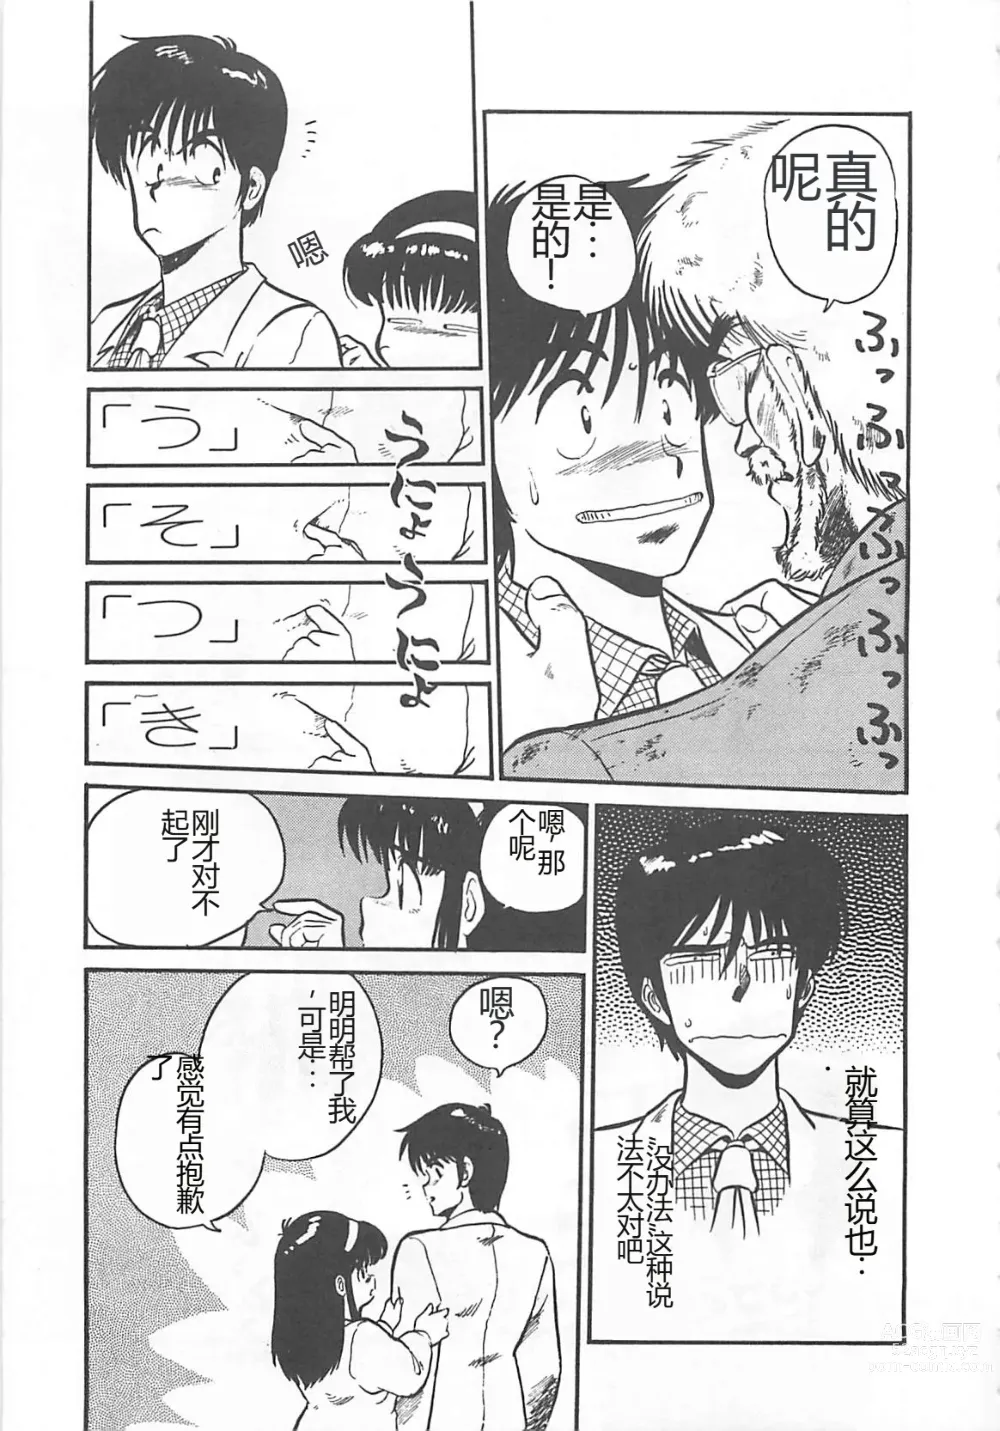 Page 142 of manga Tamonzen Zigoku Rounin